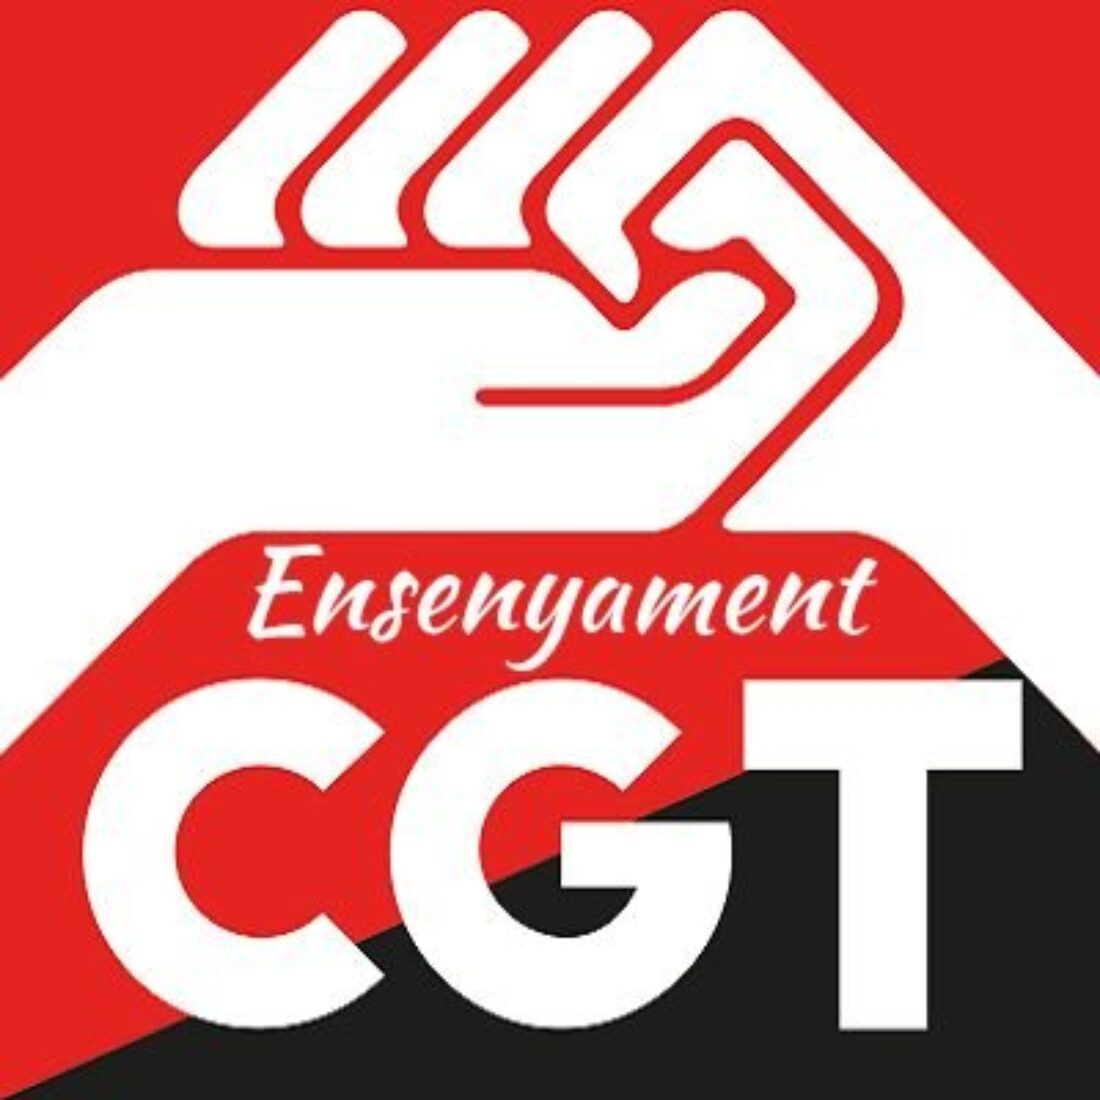 La CGT, prèvia consulta amb la seva afiliació, decideix convocar vaga els propers 25 i 26 de gener en defensa dels serveis públics